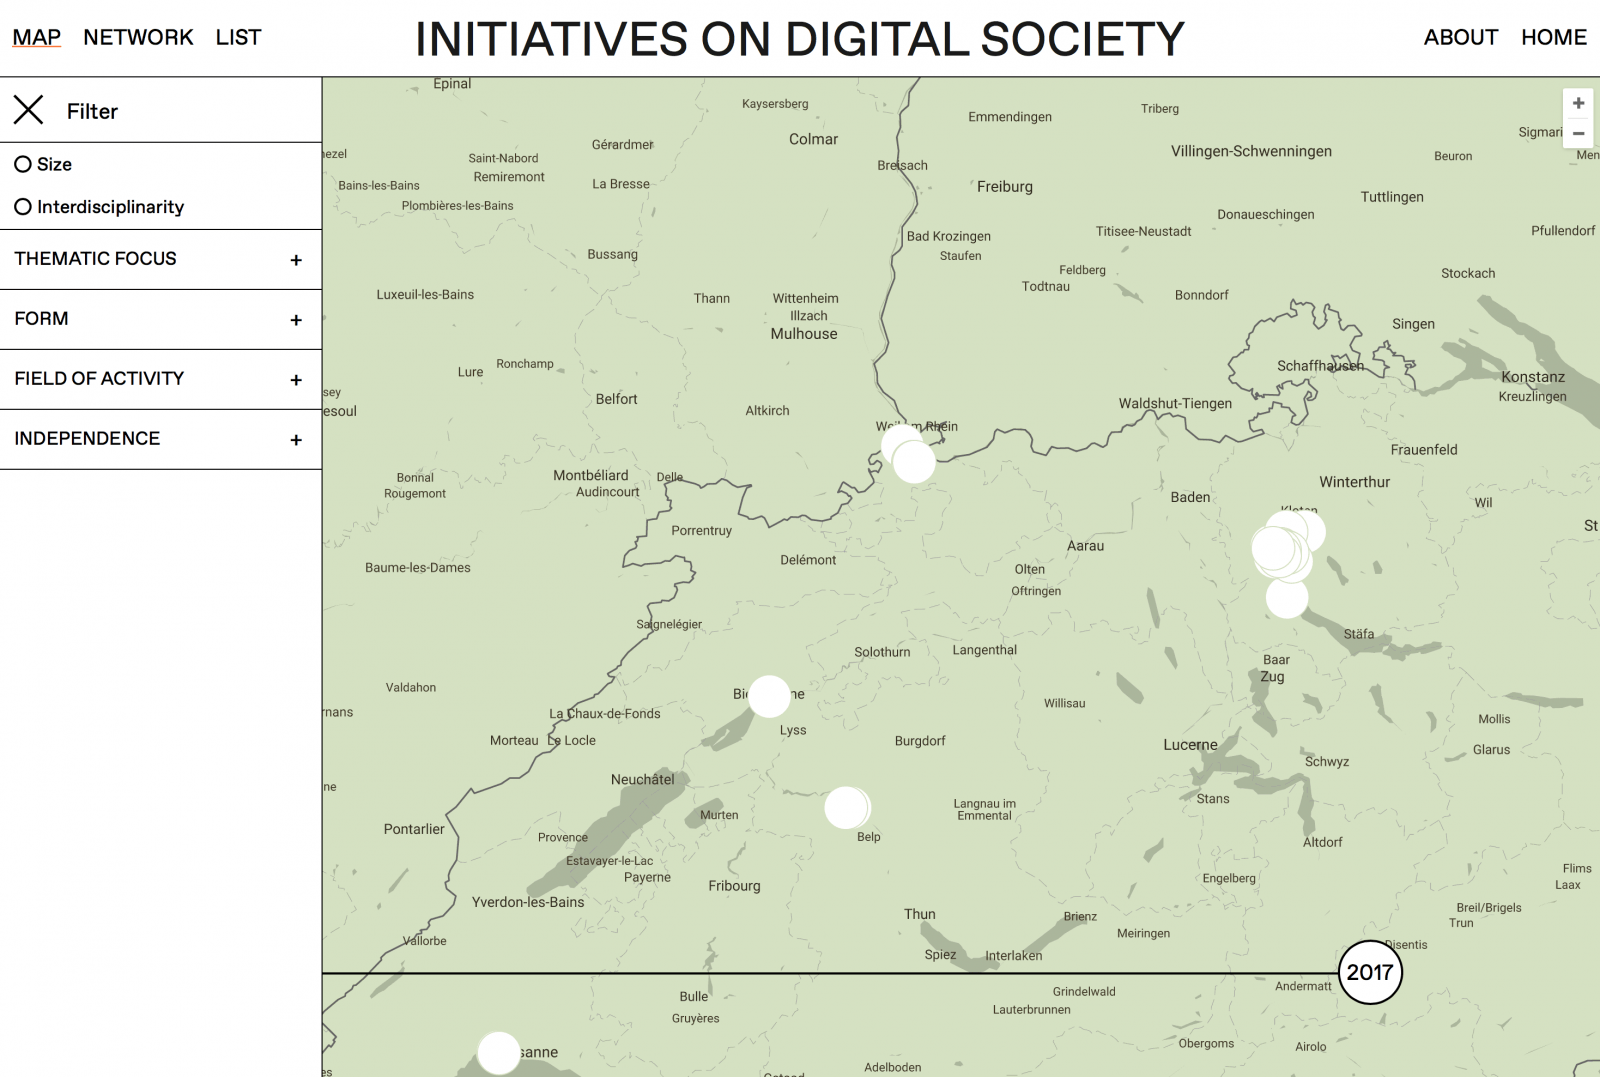 Karten-Ansicht der Initiativen zu “Digital Societies”.